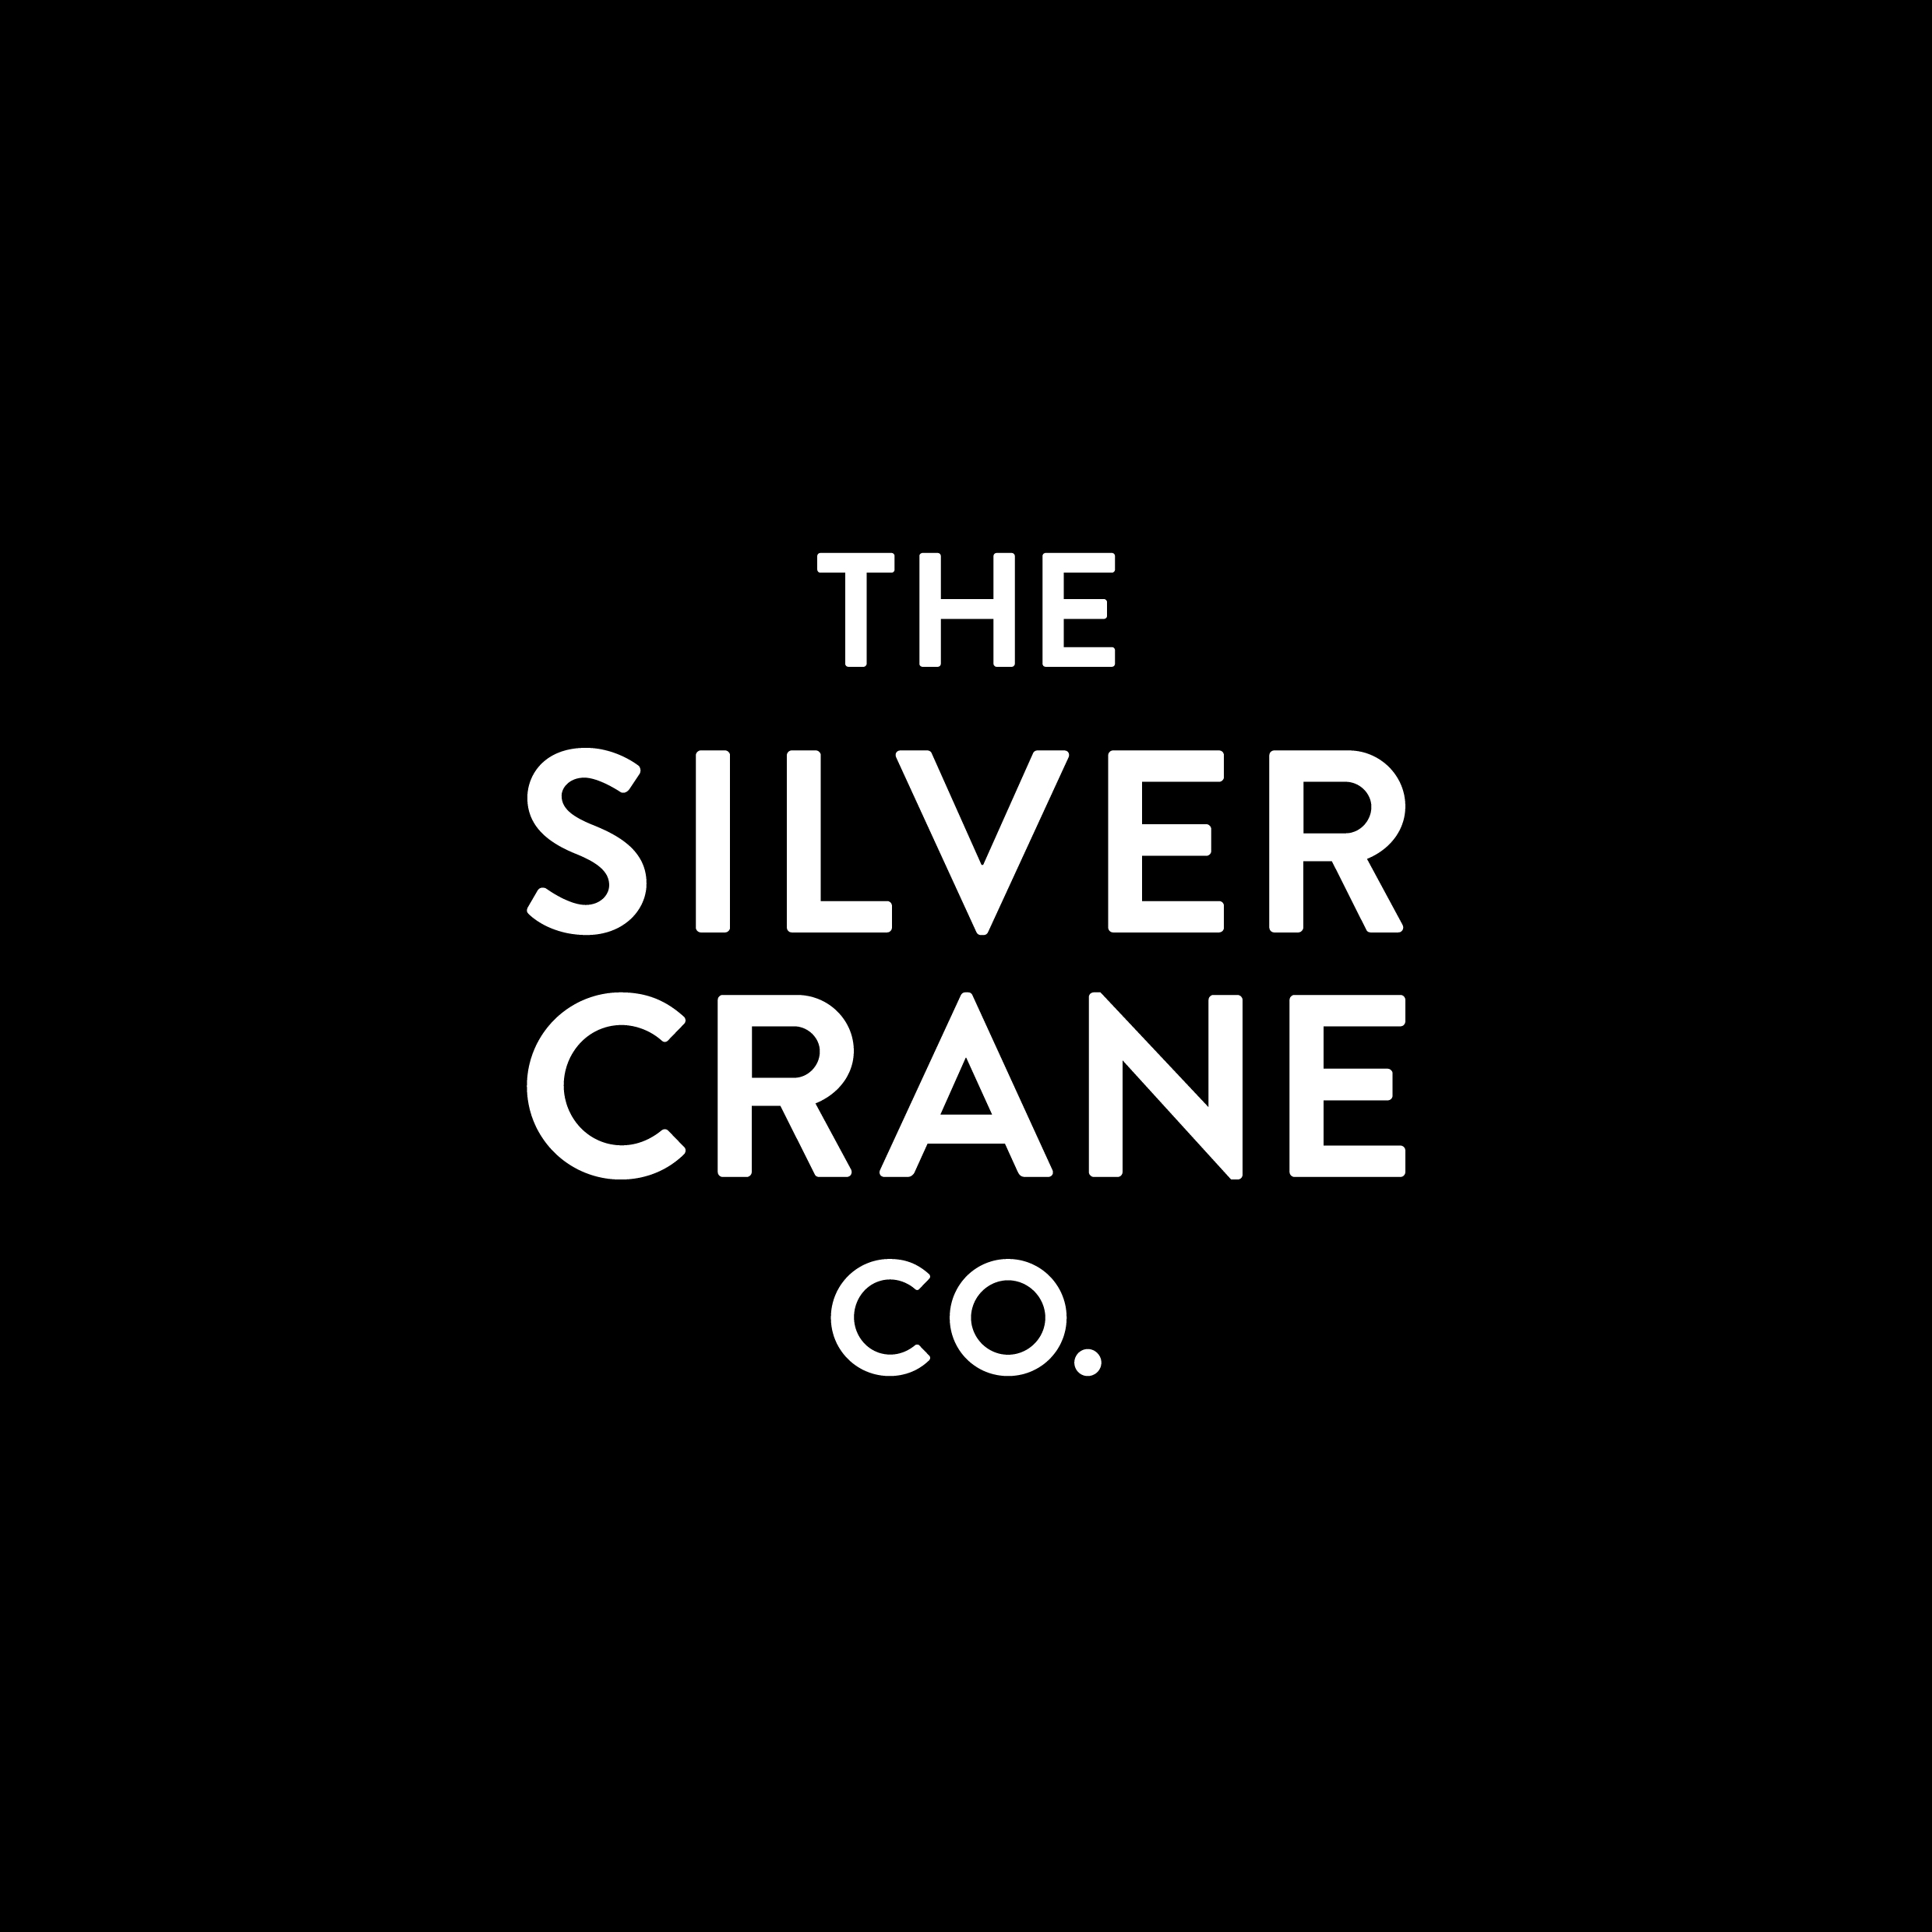 The Silver Crane Company